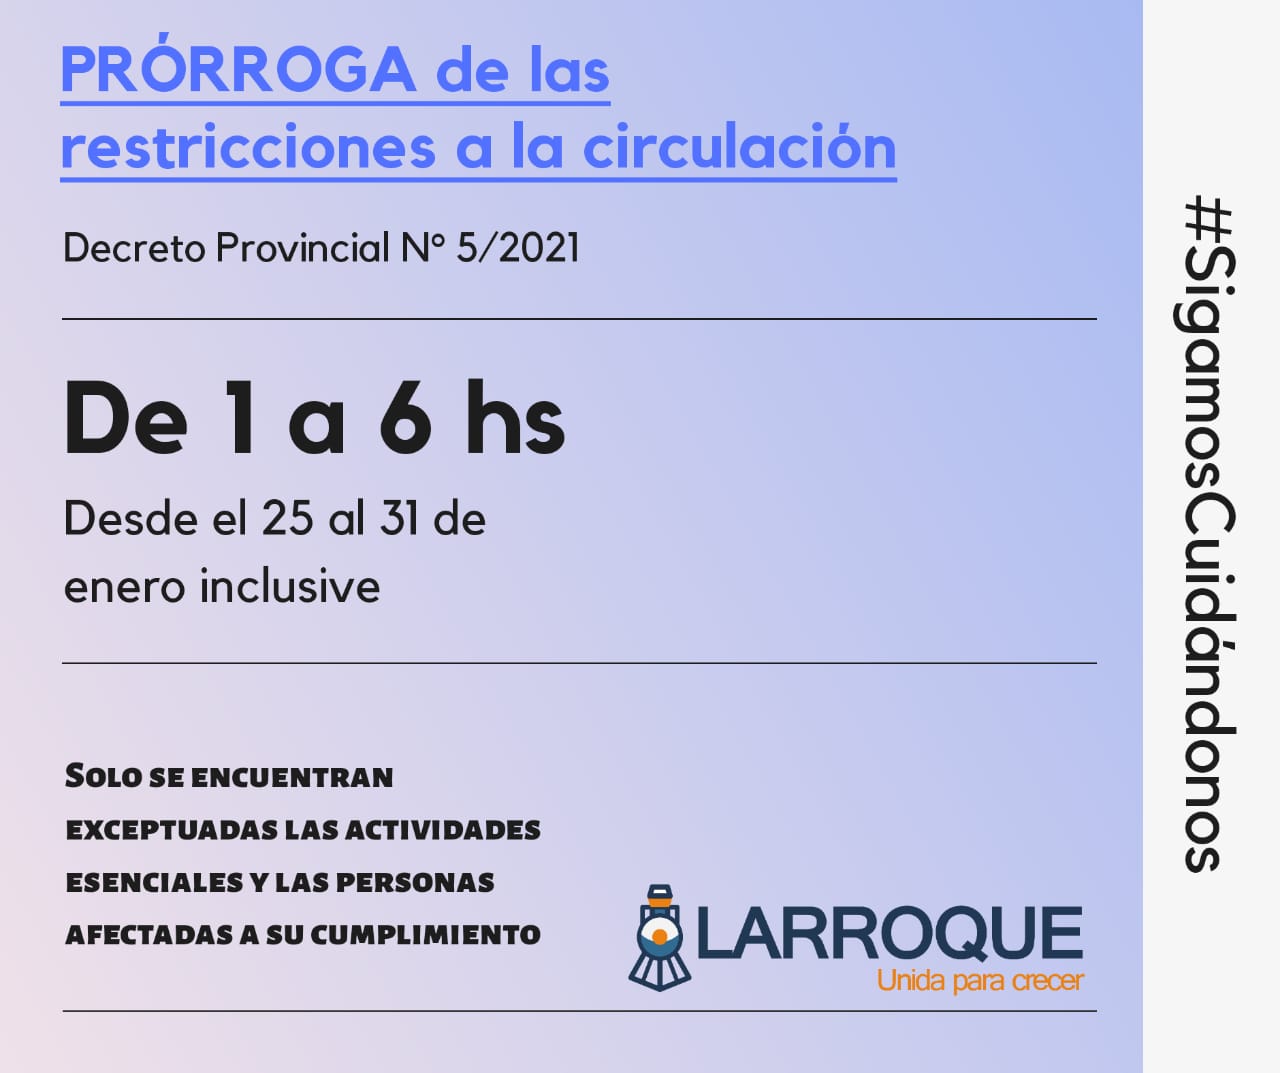 La Municipalidad de Larroque adhiere a la prórroga de las restricciones nocturnas de circulación